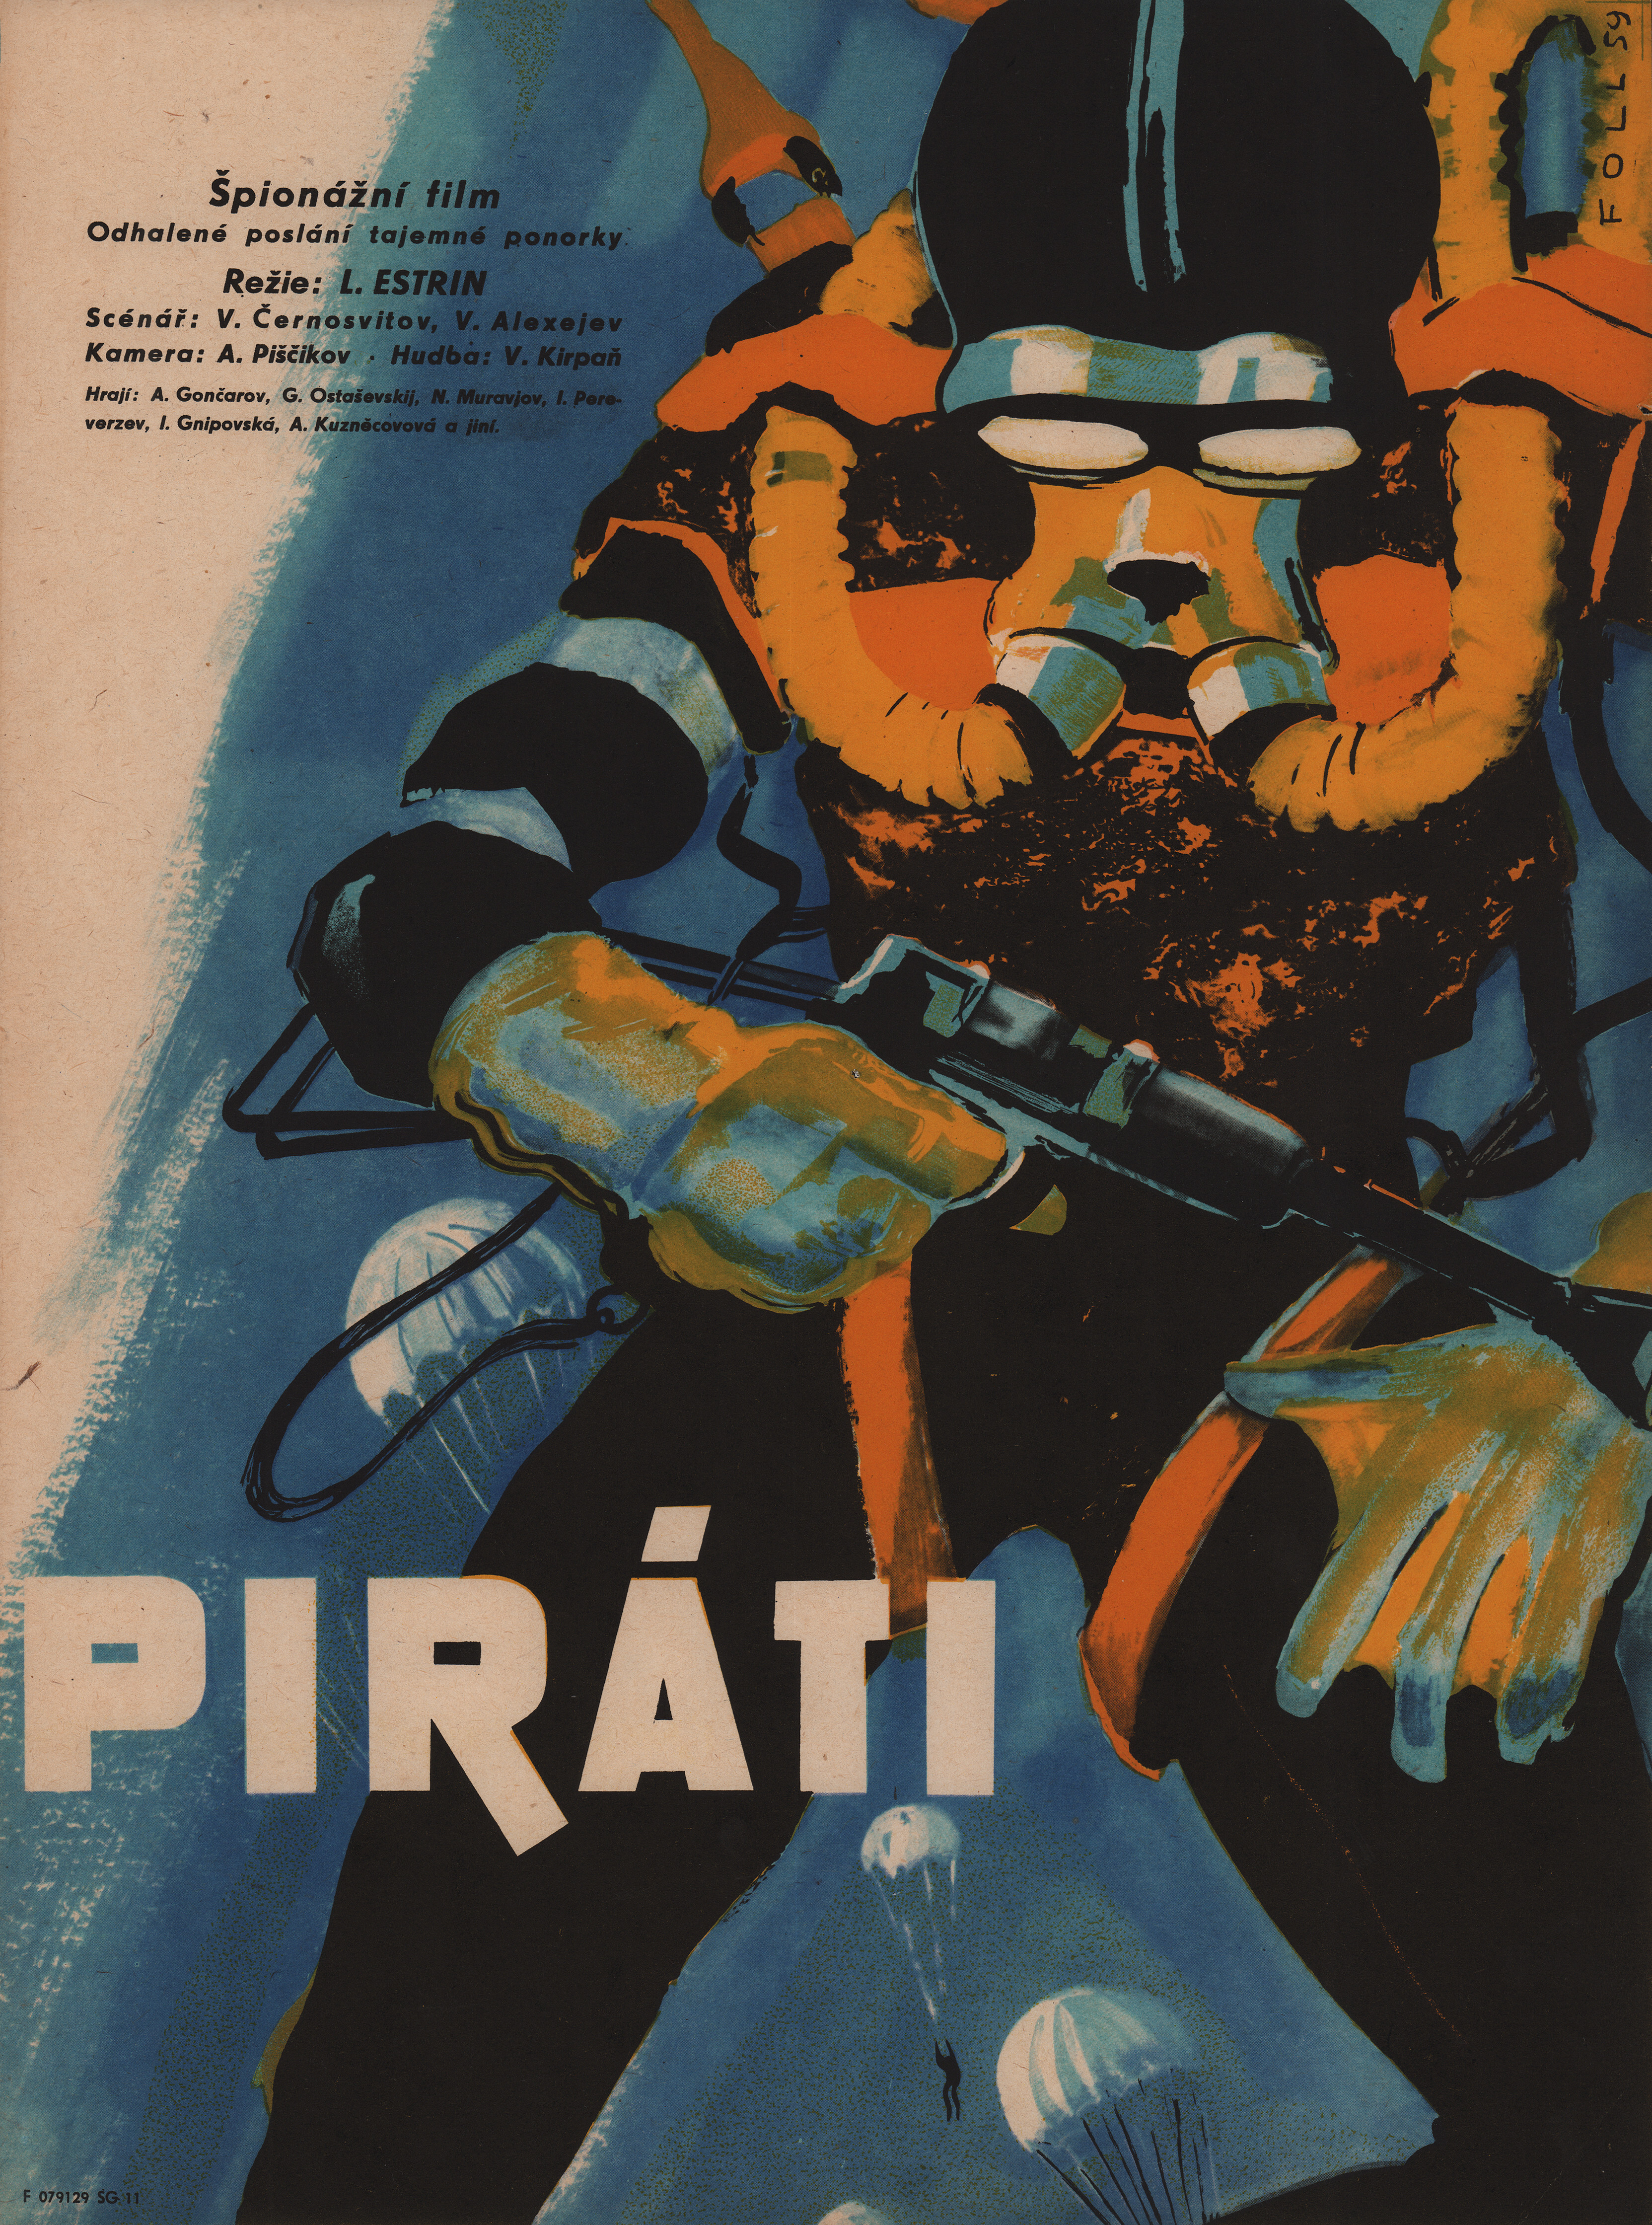 Голубая стрела (режиссёр Леонид Эстрин, 1958), чехословацкий постер к фильму, автор Фолль Доброслав, 1959 год